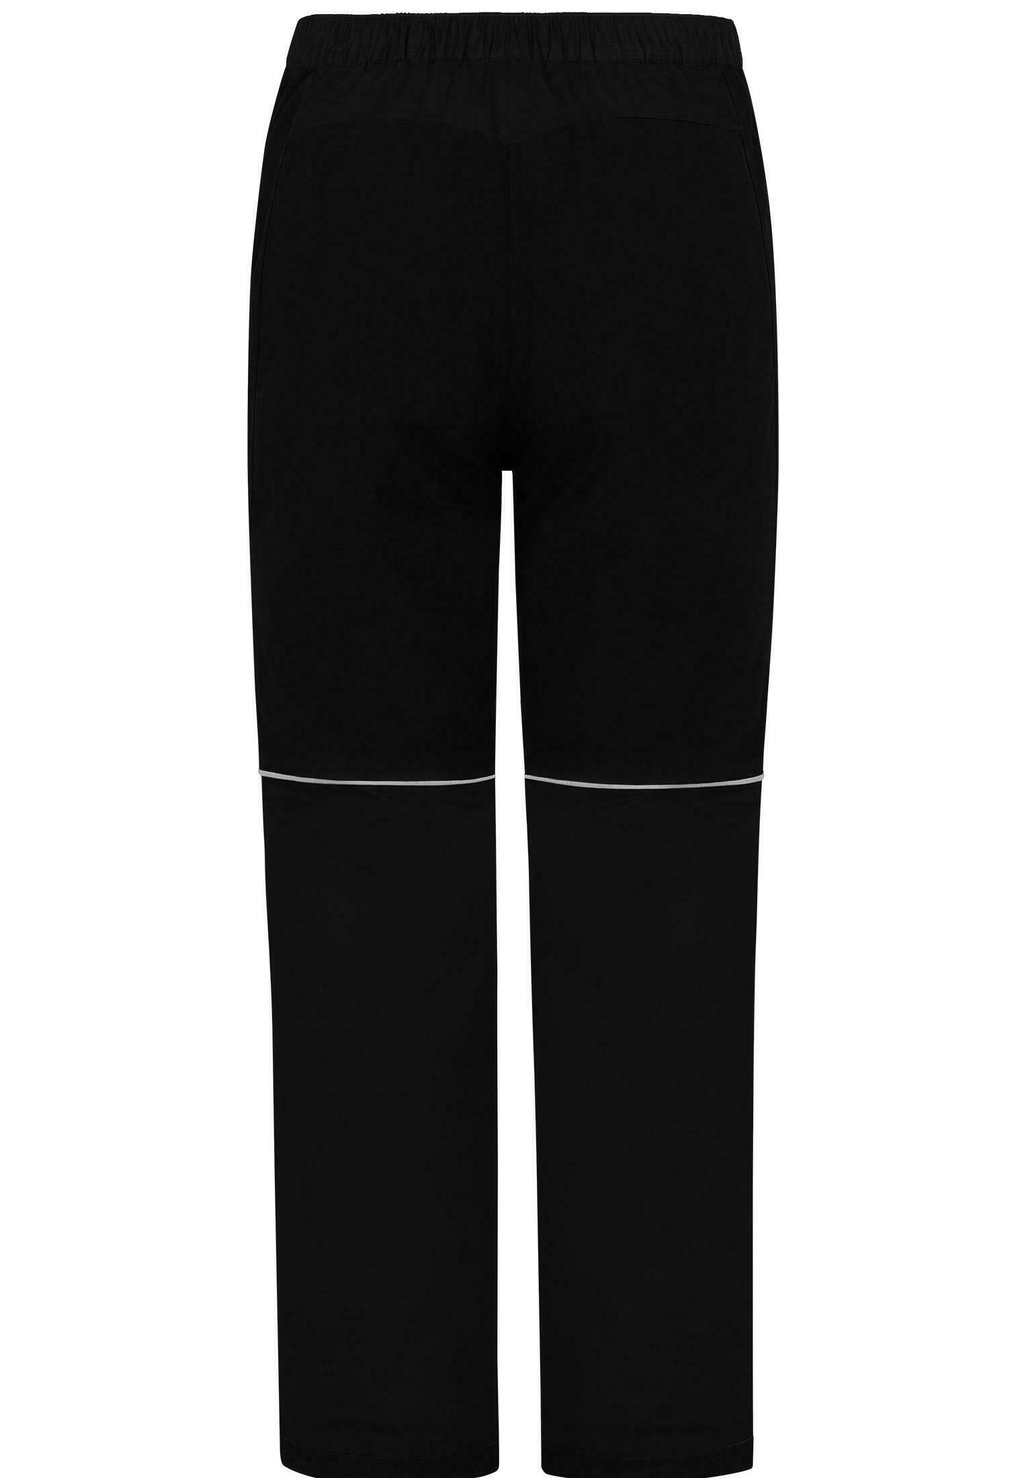 Дождевые брюки SEKIU normani Outdoor Sports, цвет schwarz дождевики sekiu normani outdoor sports цвет navy